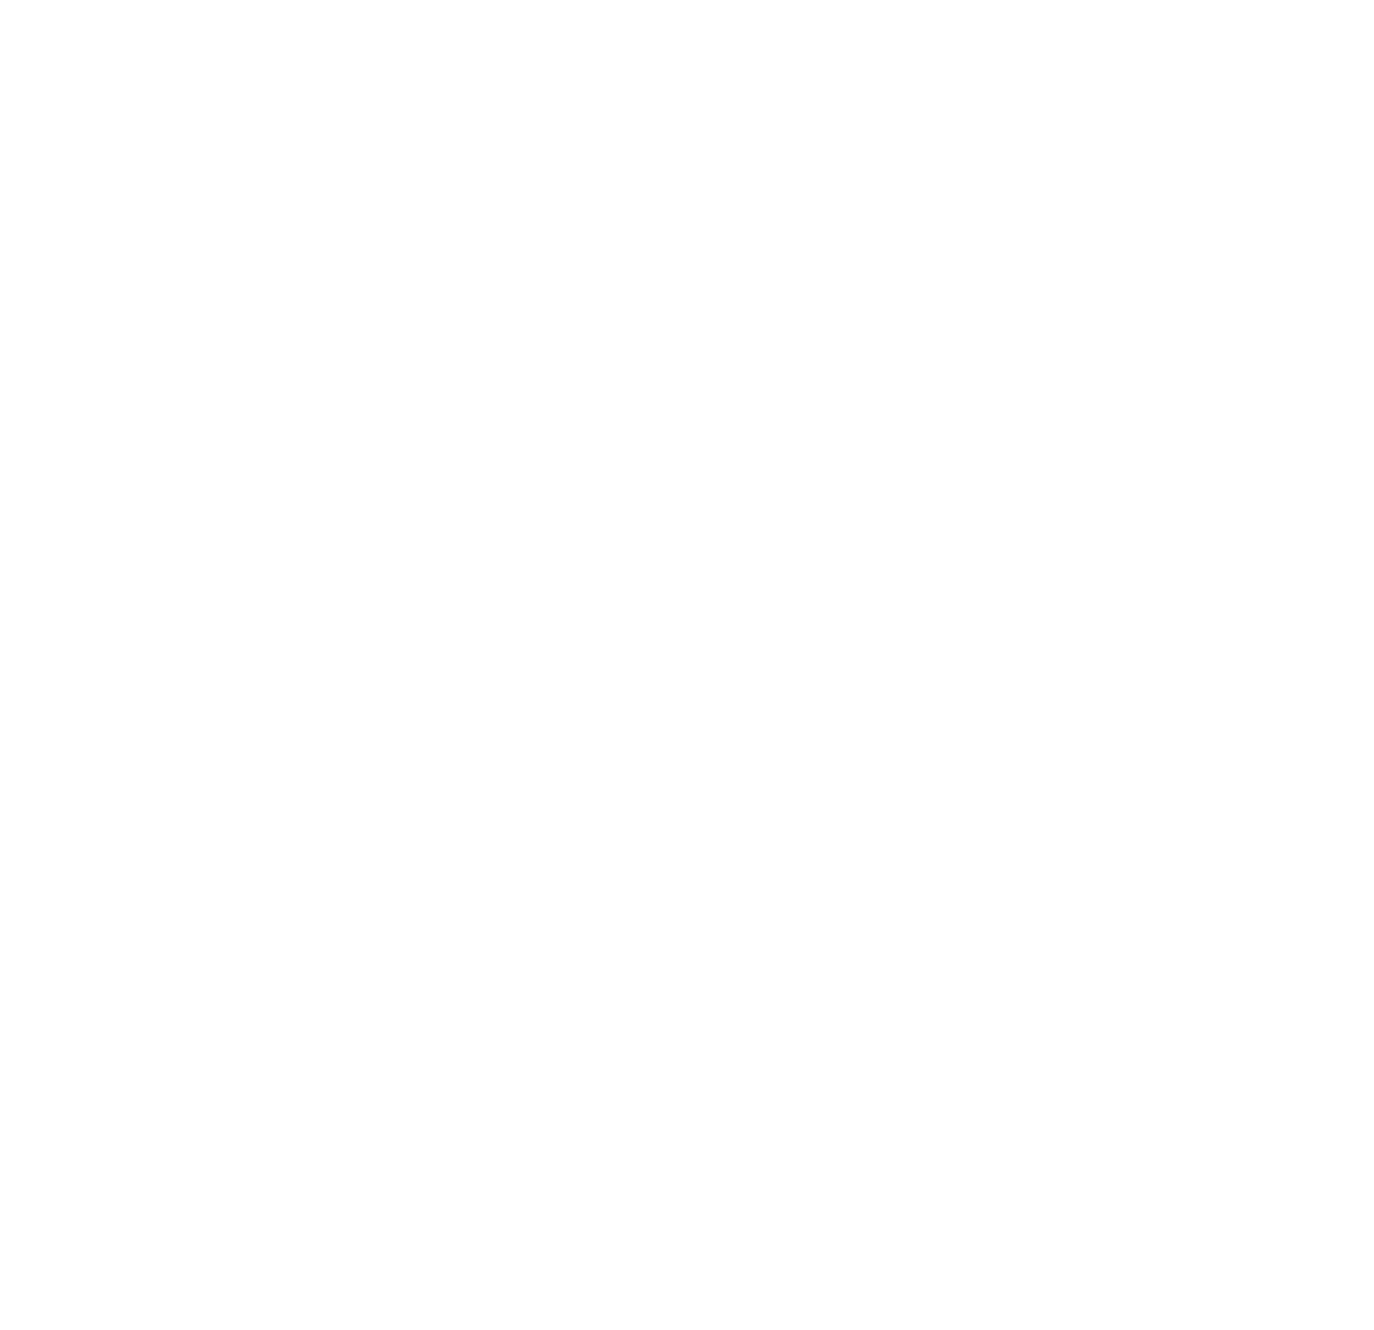 WeBozburun Hotel